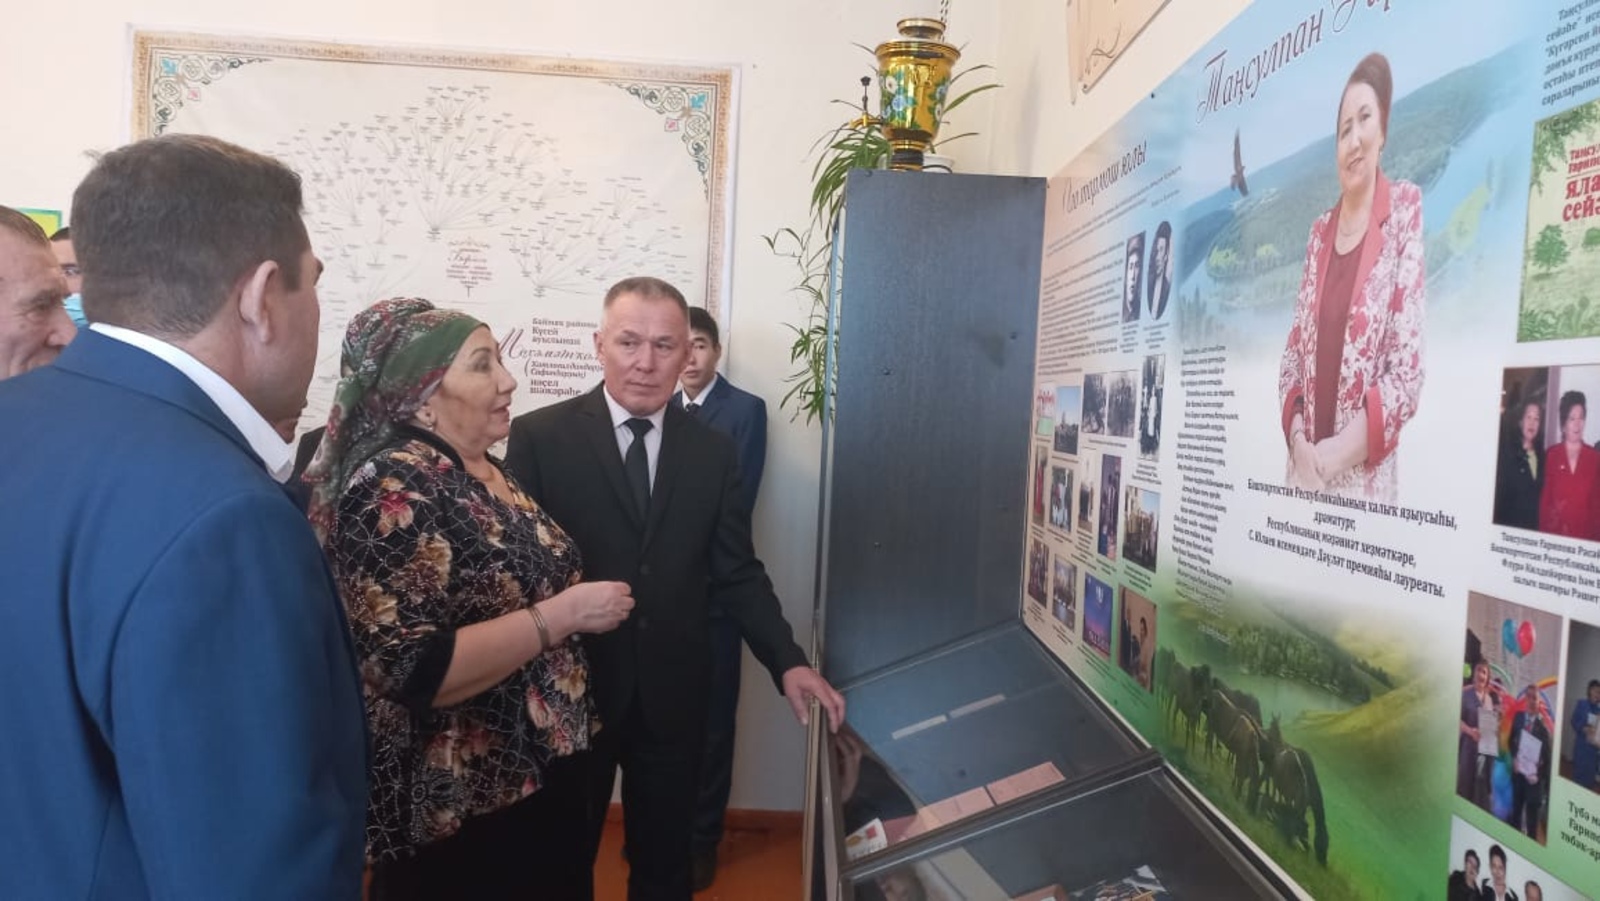 В Баймакском районе Башкирии открылся музей народной писательницы Тансулпан Гариповой